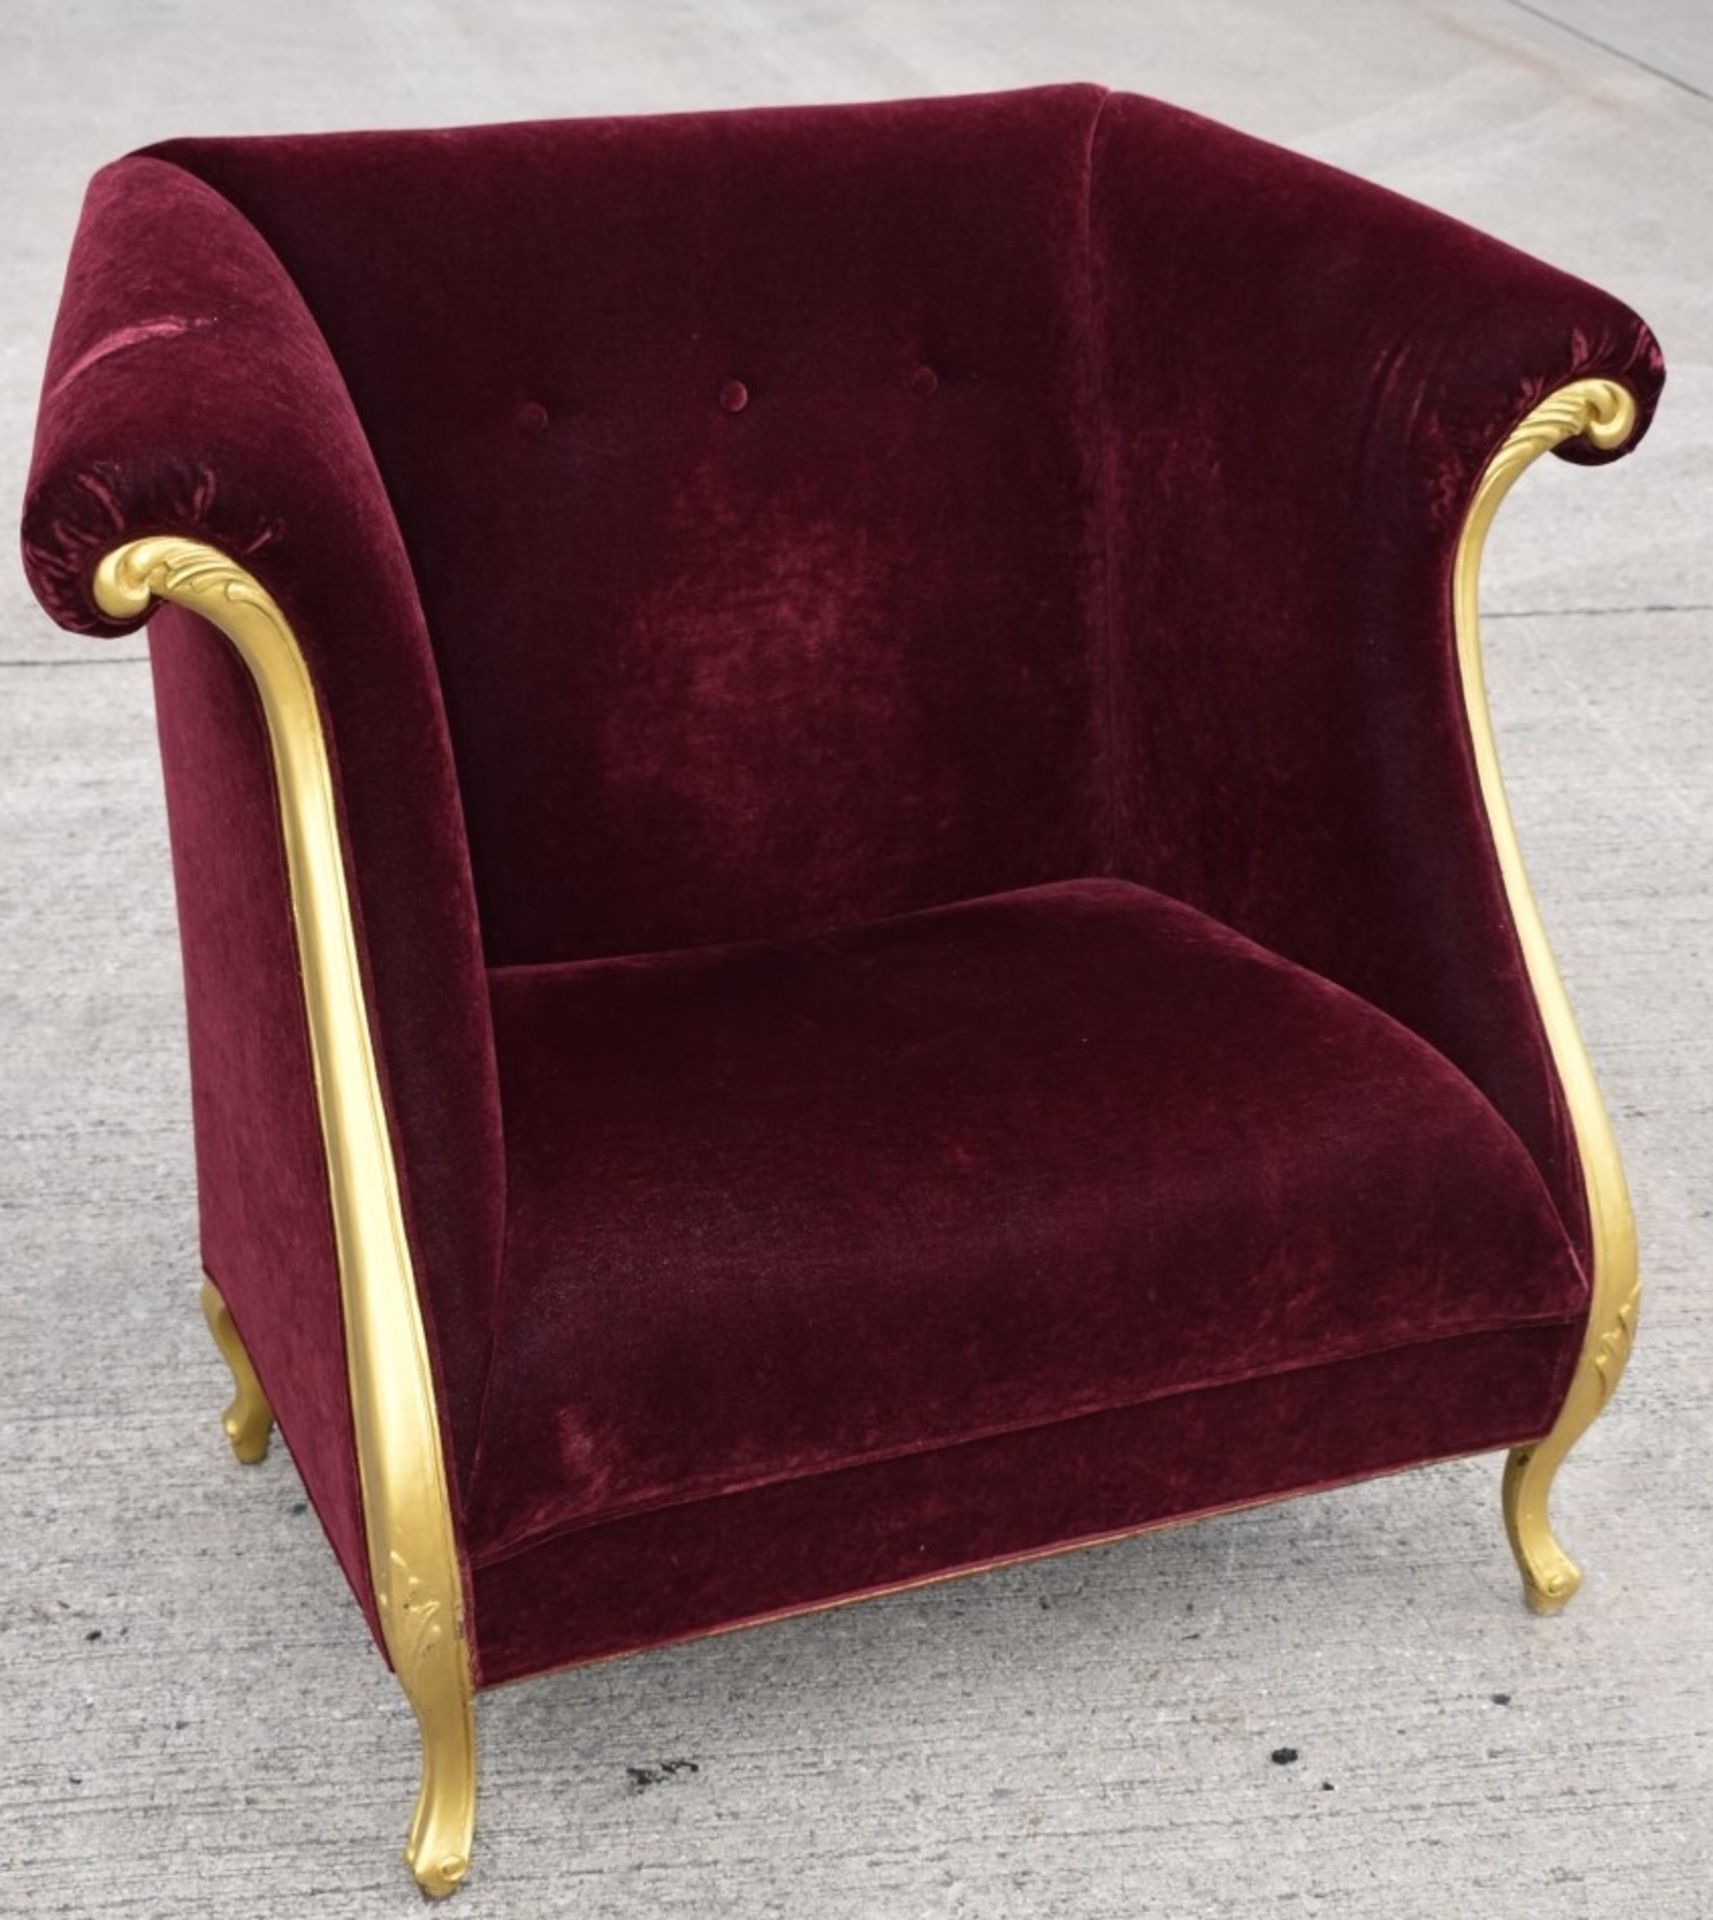 1 x CHRISTOPHER GUY Bespoke Opulent Velvet Upholstered Oversized Armchair - Original Price £4,000 - Image 6 of 9